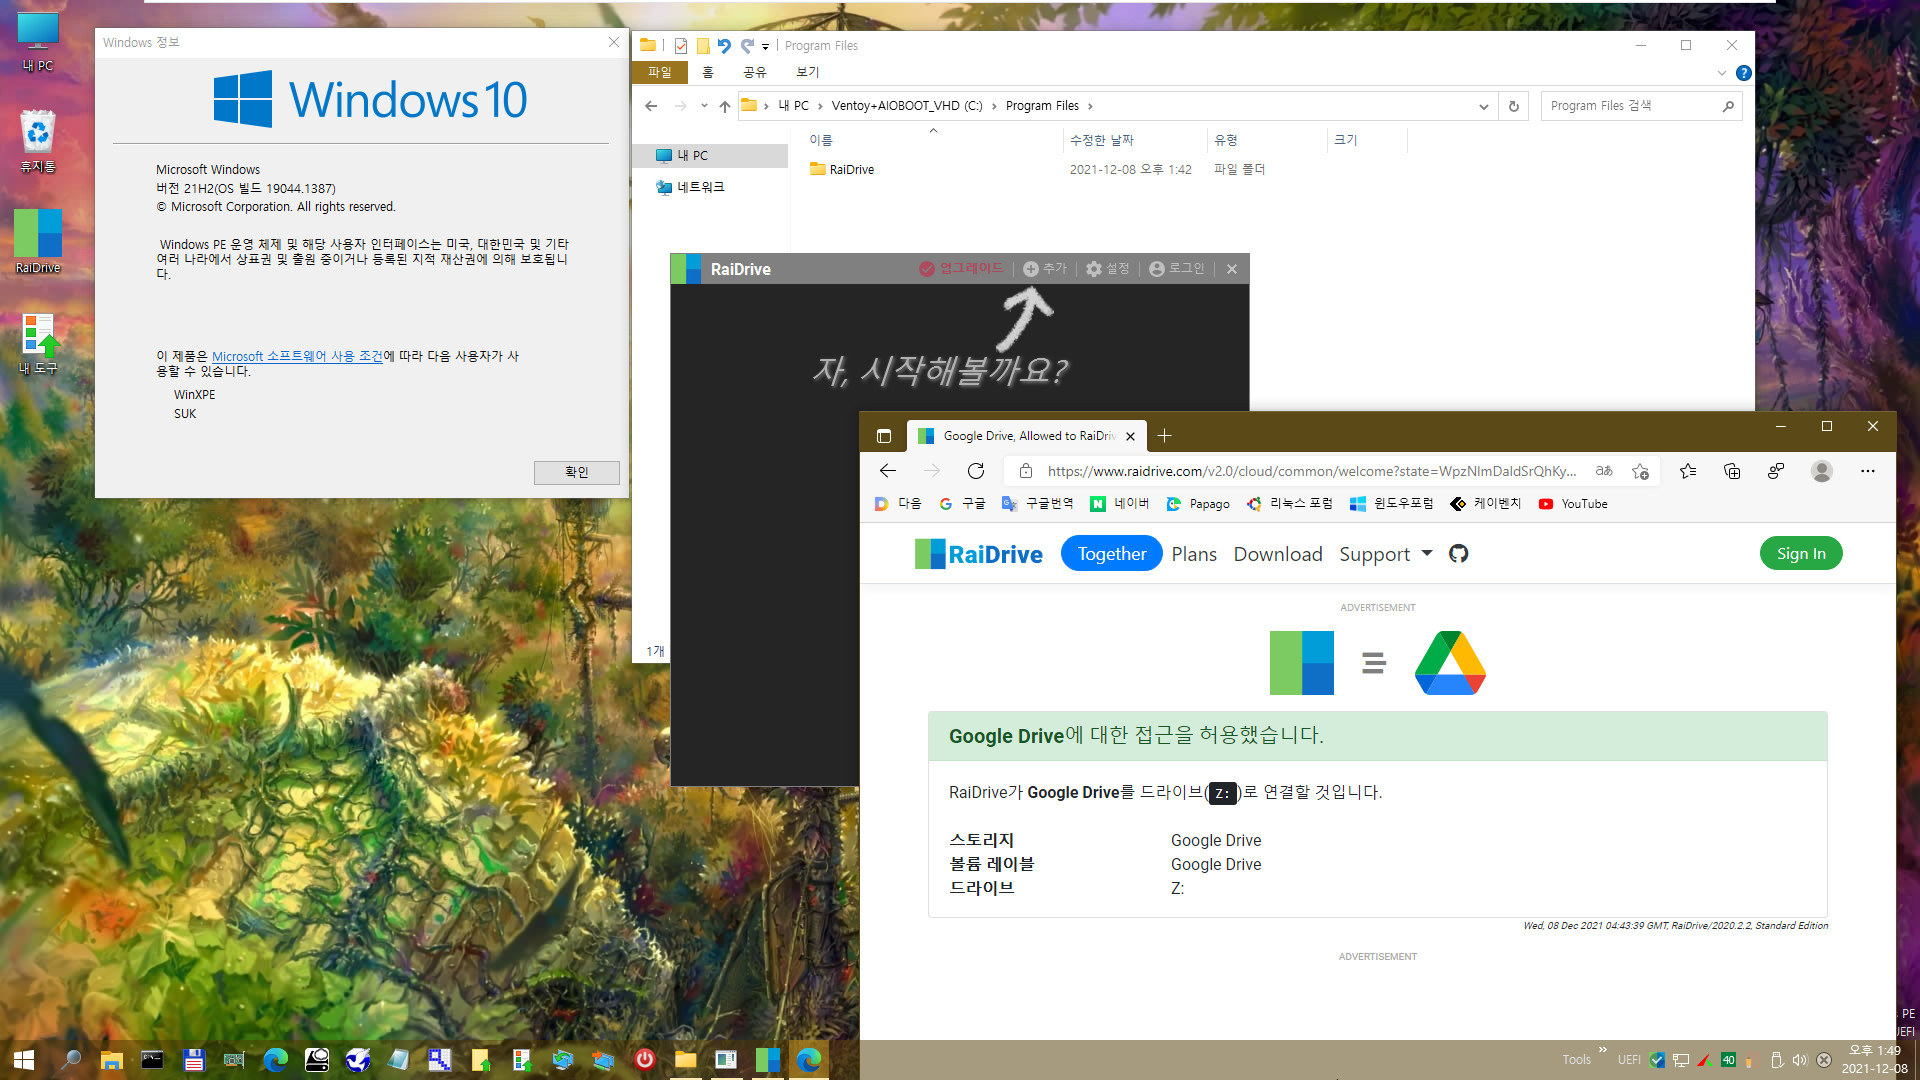 PE에서 RaiDrive 첫 설치 테스트 - WindowsXPE132 으로 Windows 10 (19044.1387) 통합본으로 PE 만들어서 테스트 - 여러번 시도하여 성공함 2021-12-08_134948.jpg